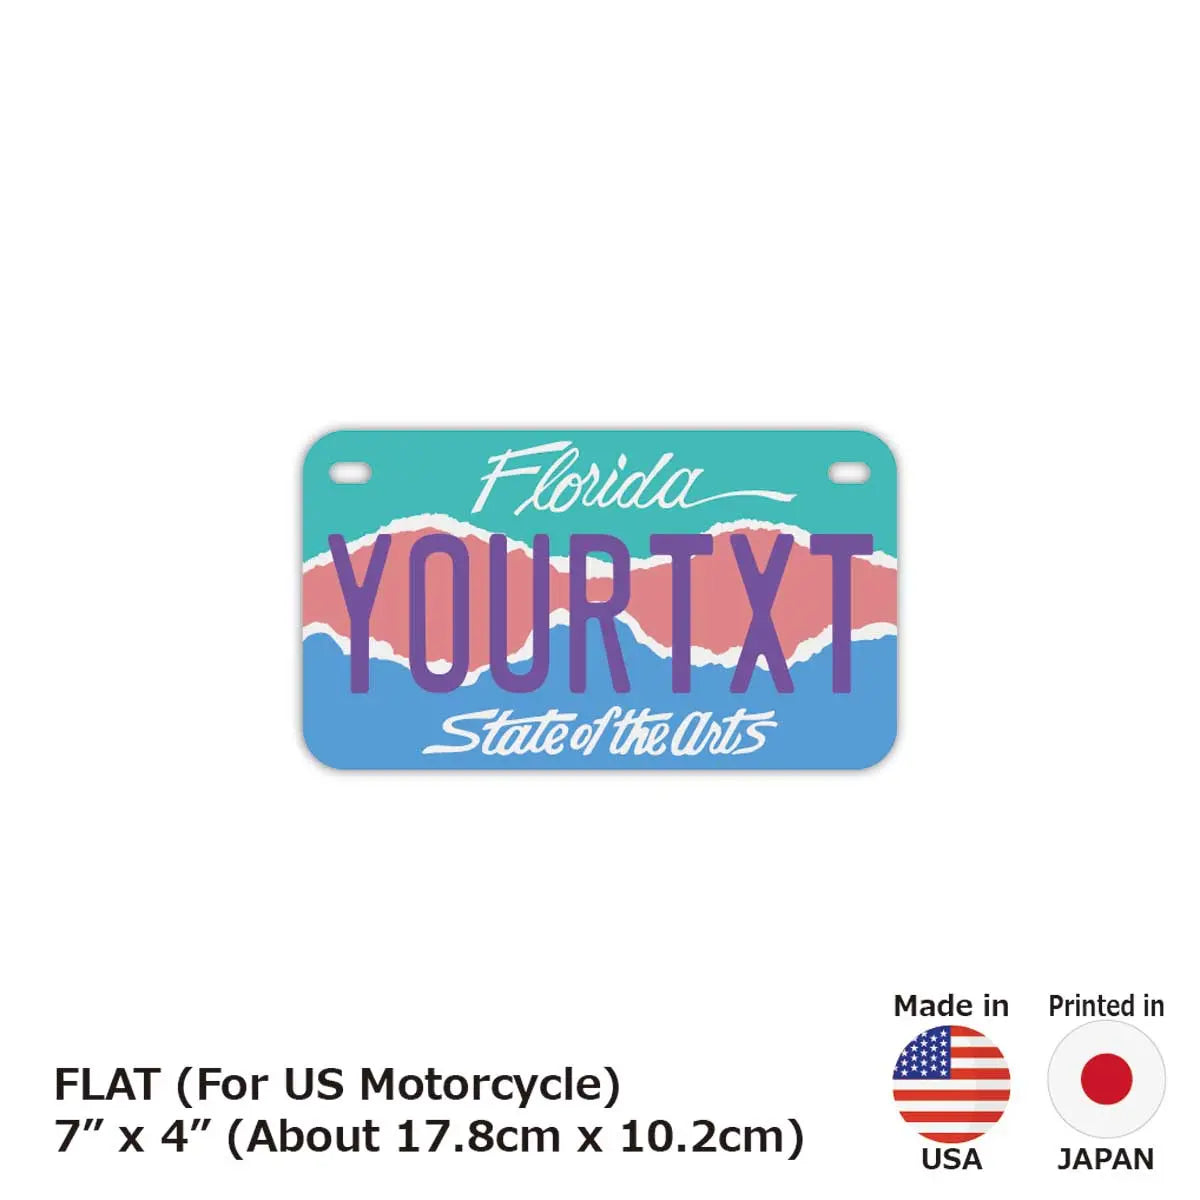 【中・USバイク用】フロリダ・アート/オリジナルアメリカナンバープレート PL8HERO